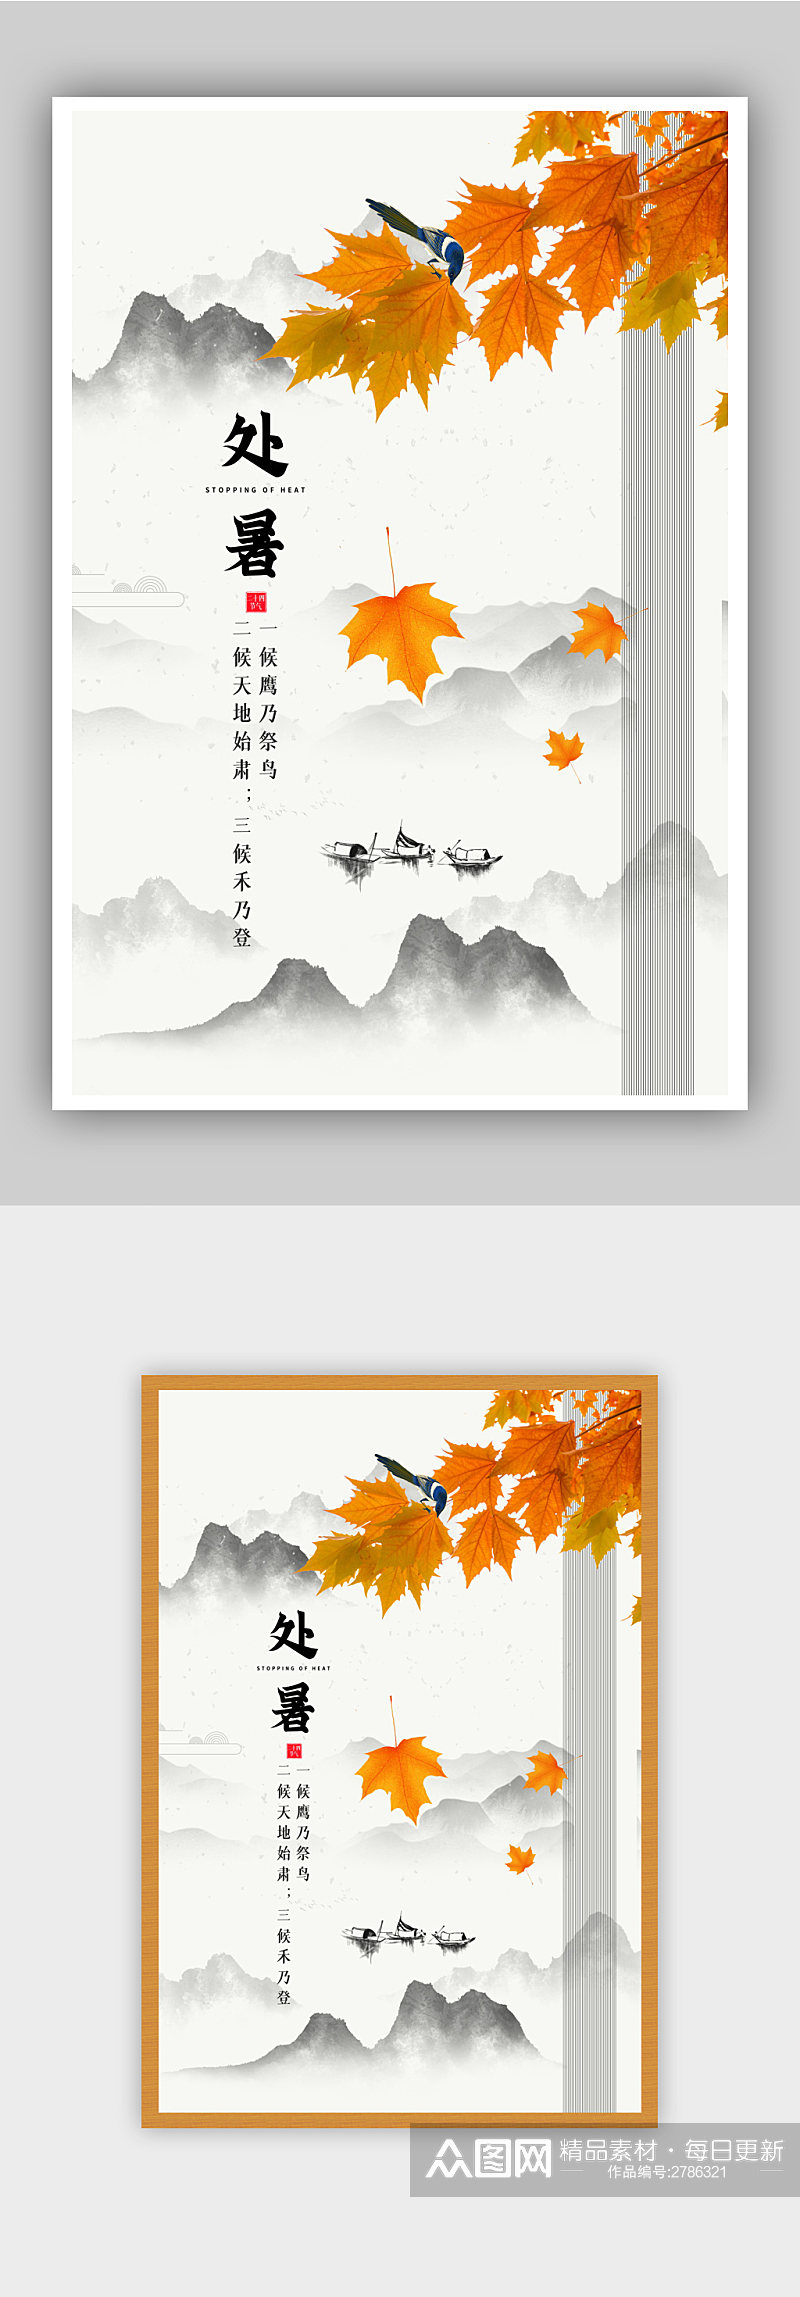 中国山水风处暑节气宣传海报素材